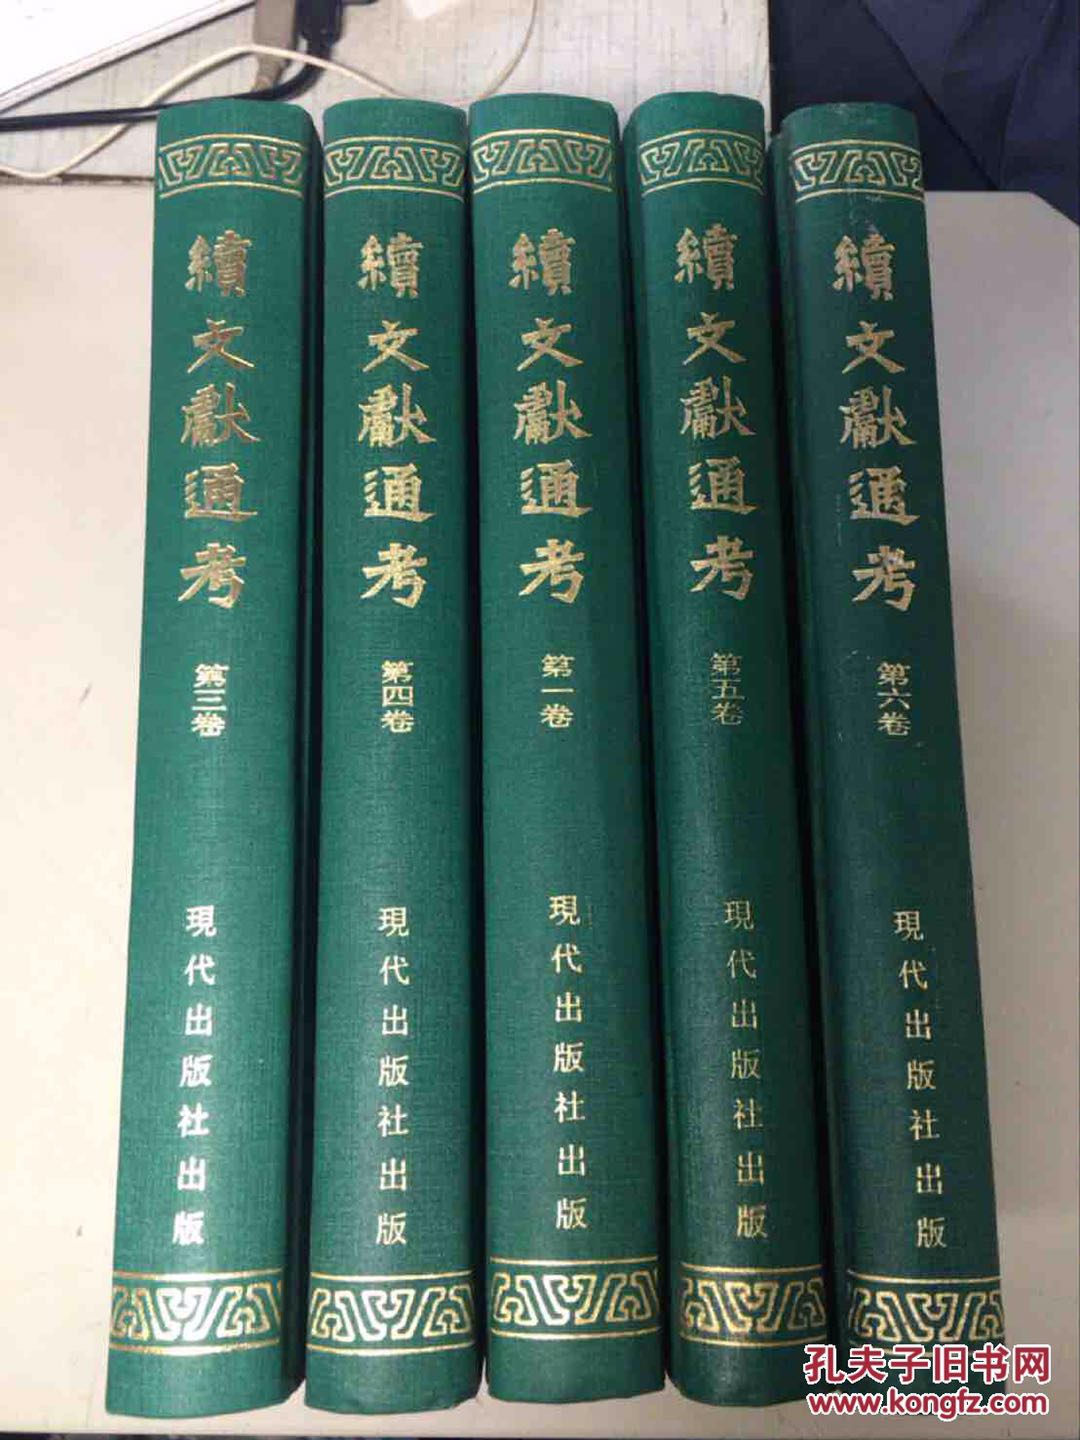 北京 海淀区 上地 搬家 文学书籍 工具书 社科 经济类 收二手书 图书旧书回收网